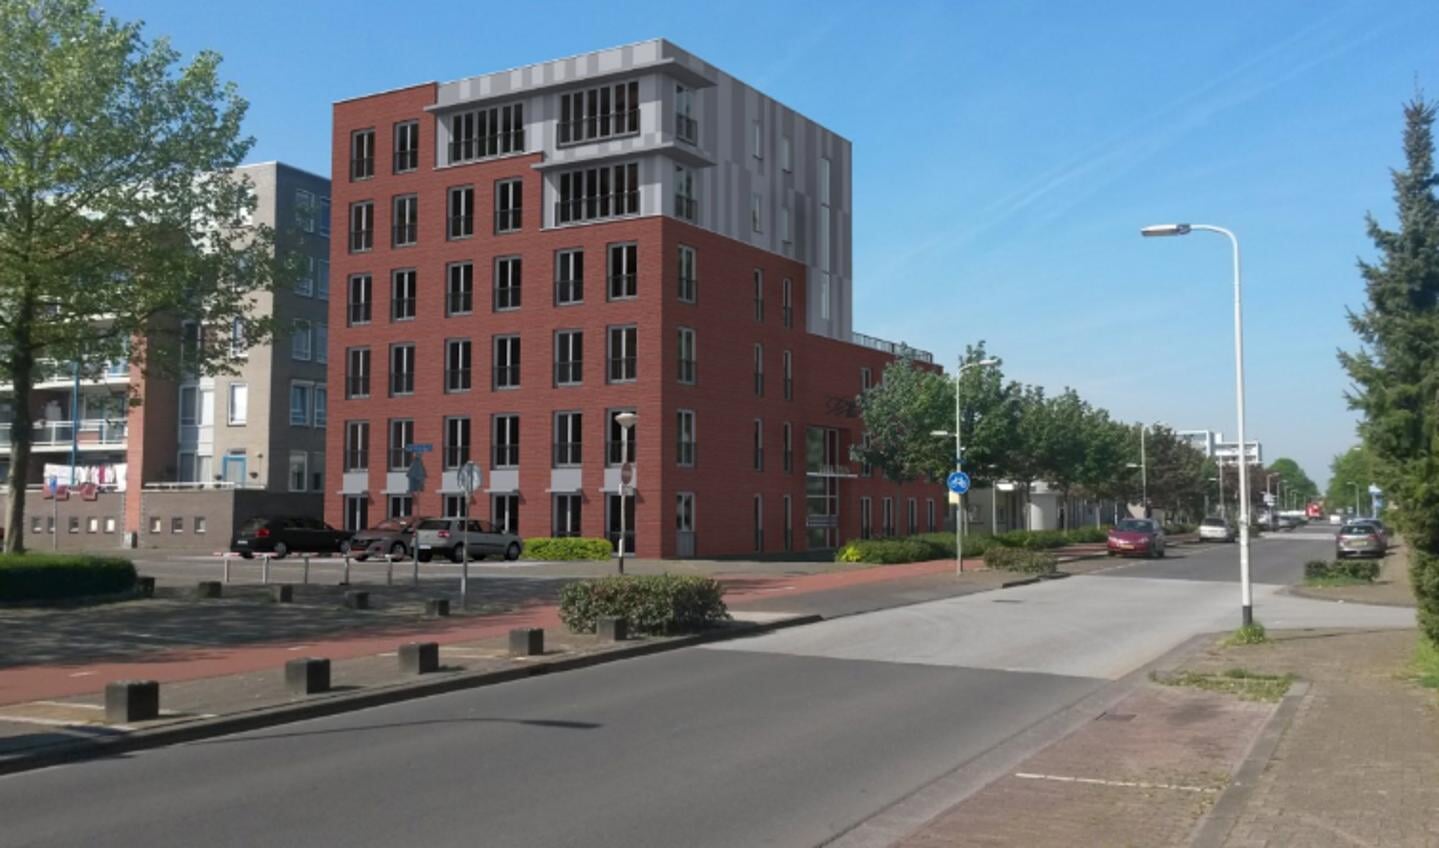 Het appartementencomplex Anna Roos aan de Meidoornstraat in Breda